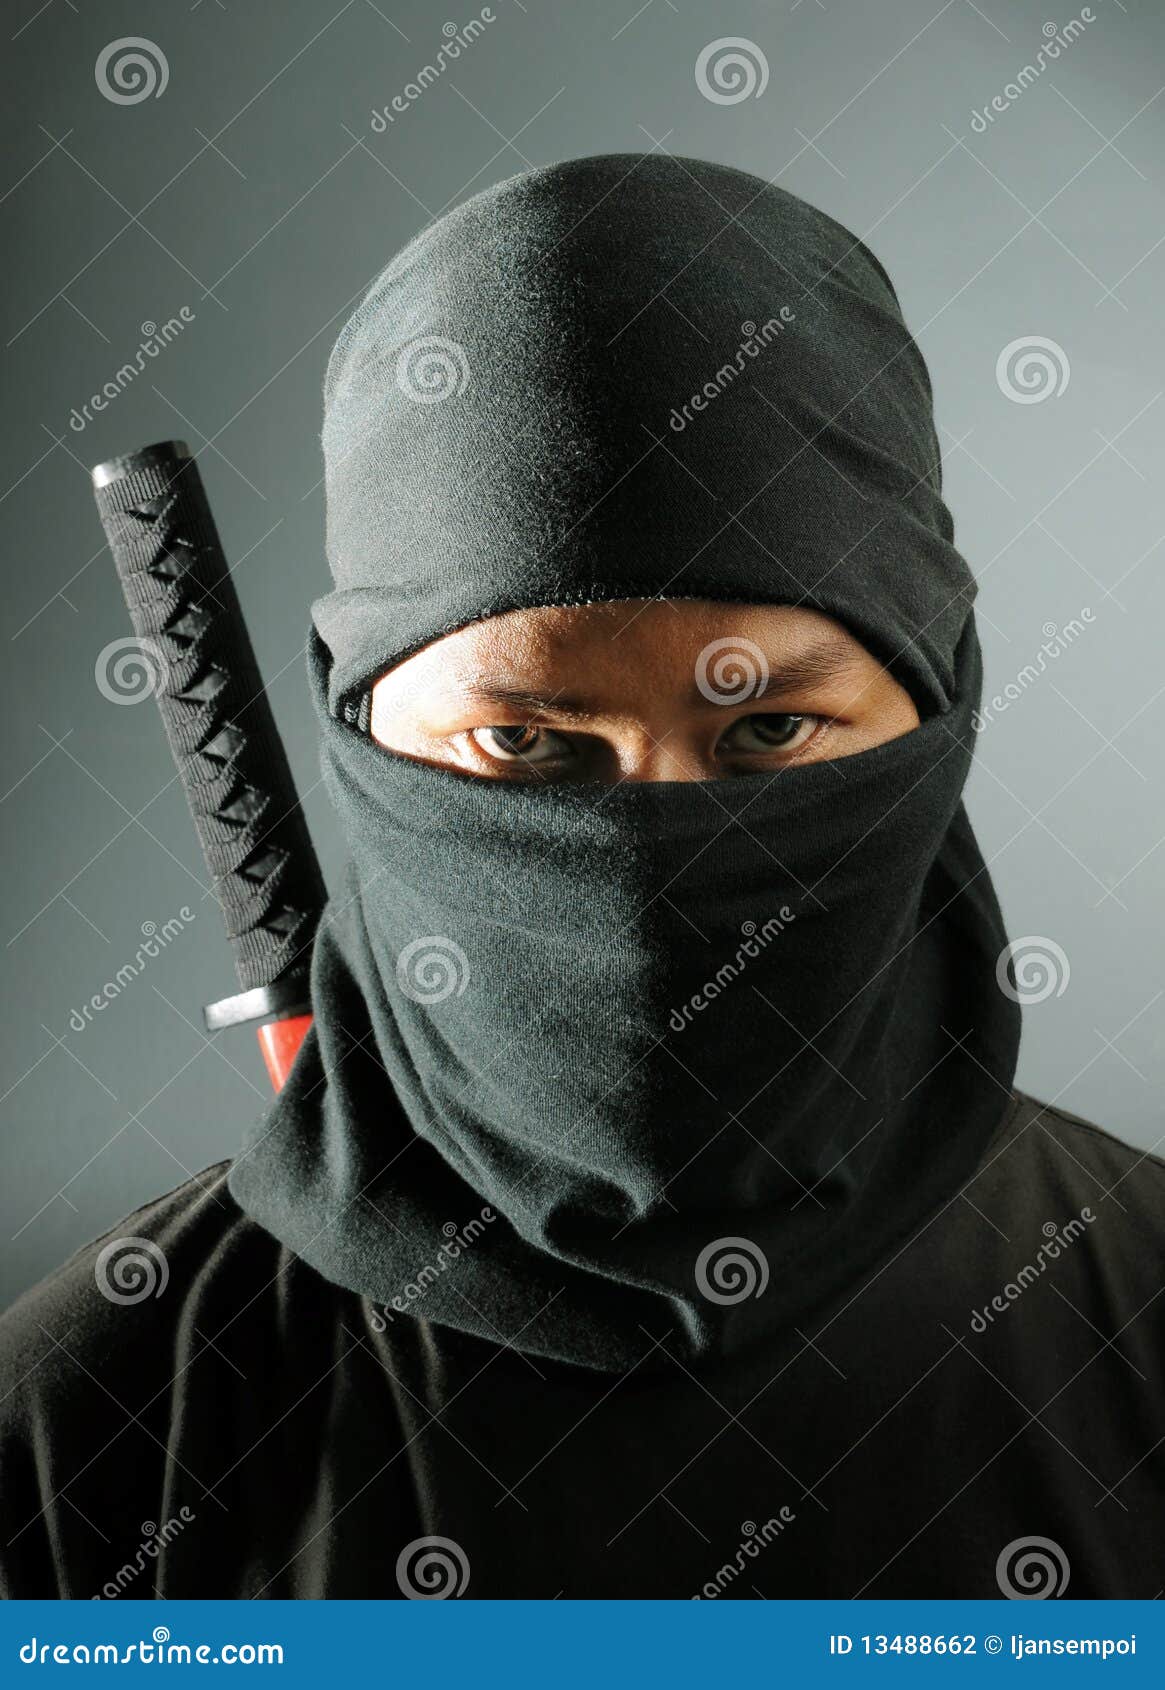 ninja assassin